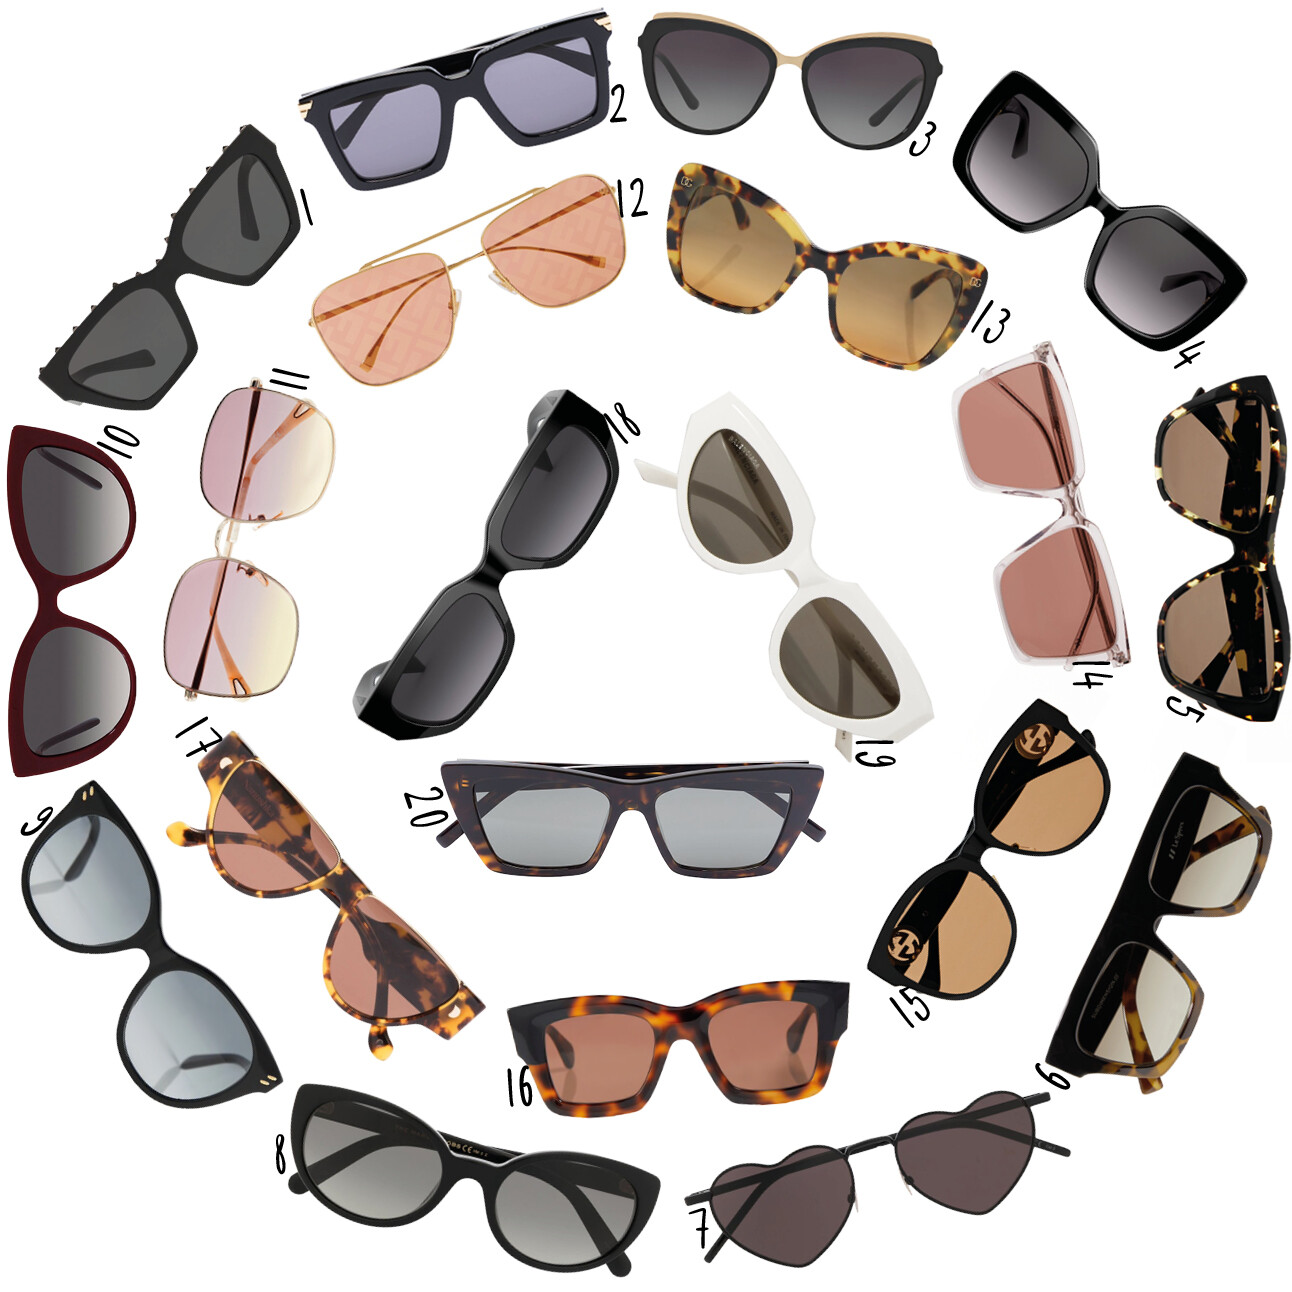 Designer zonnebrillen uit de sale